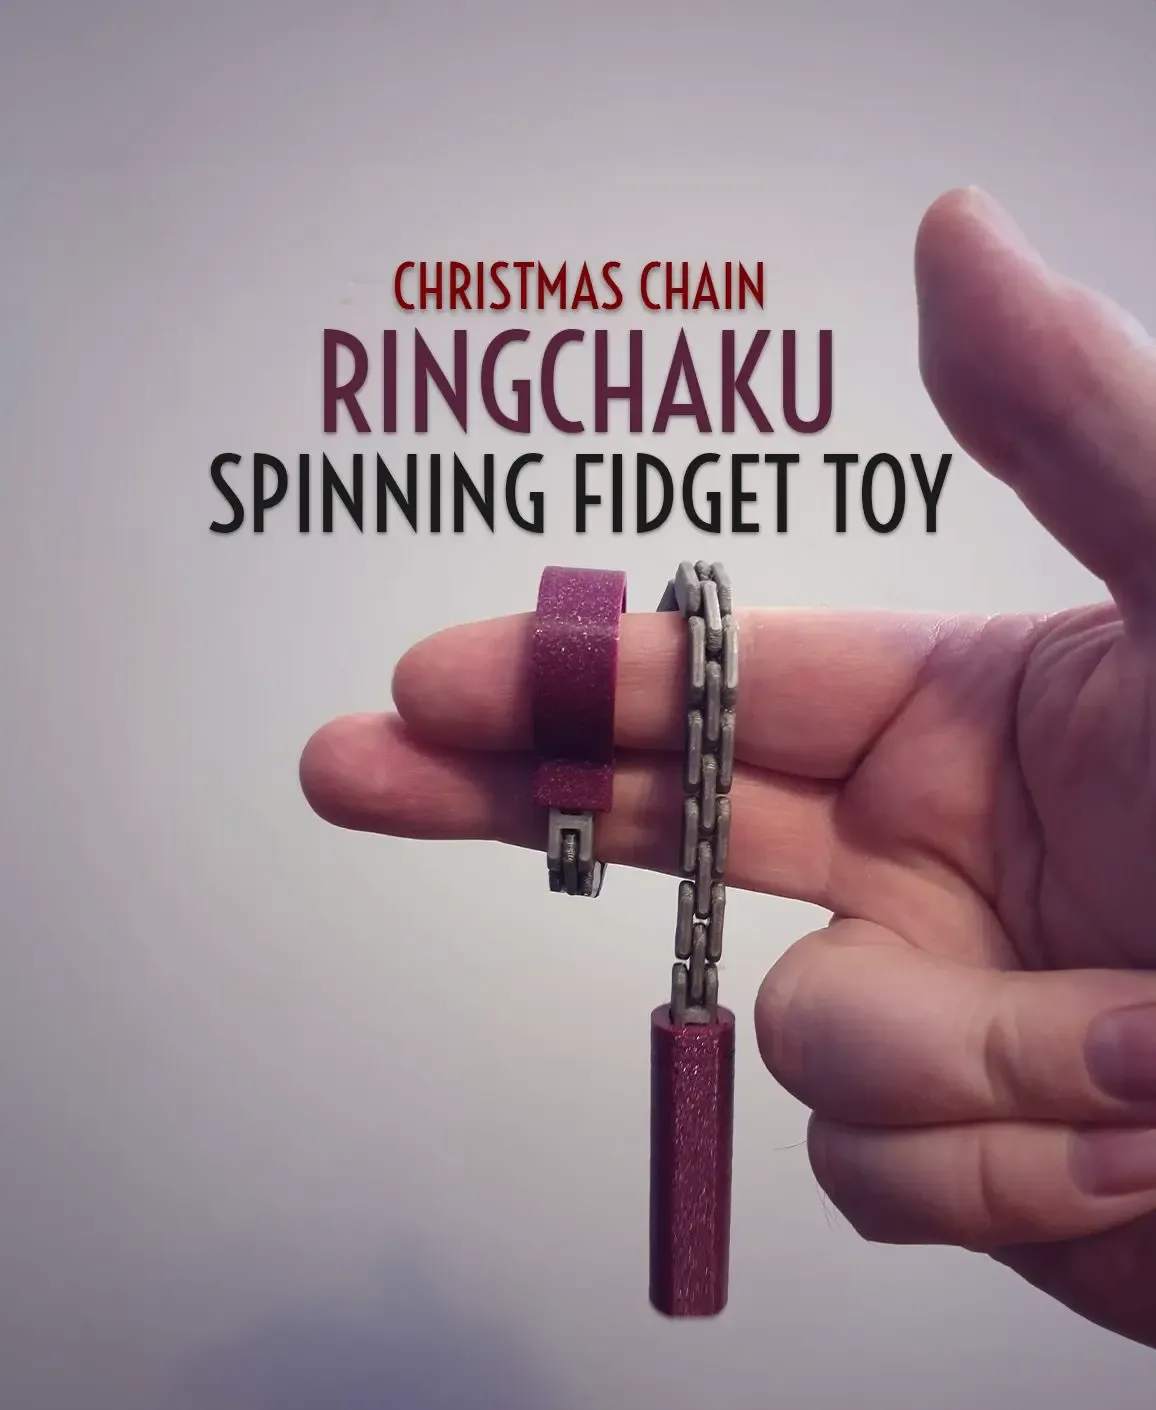 Ringchaku Spinning Fidget Toy